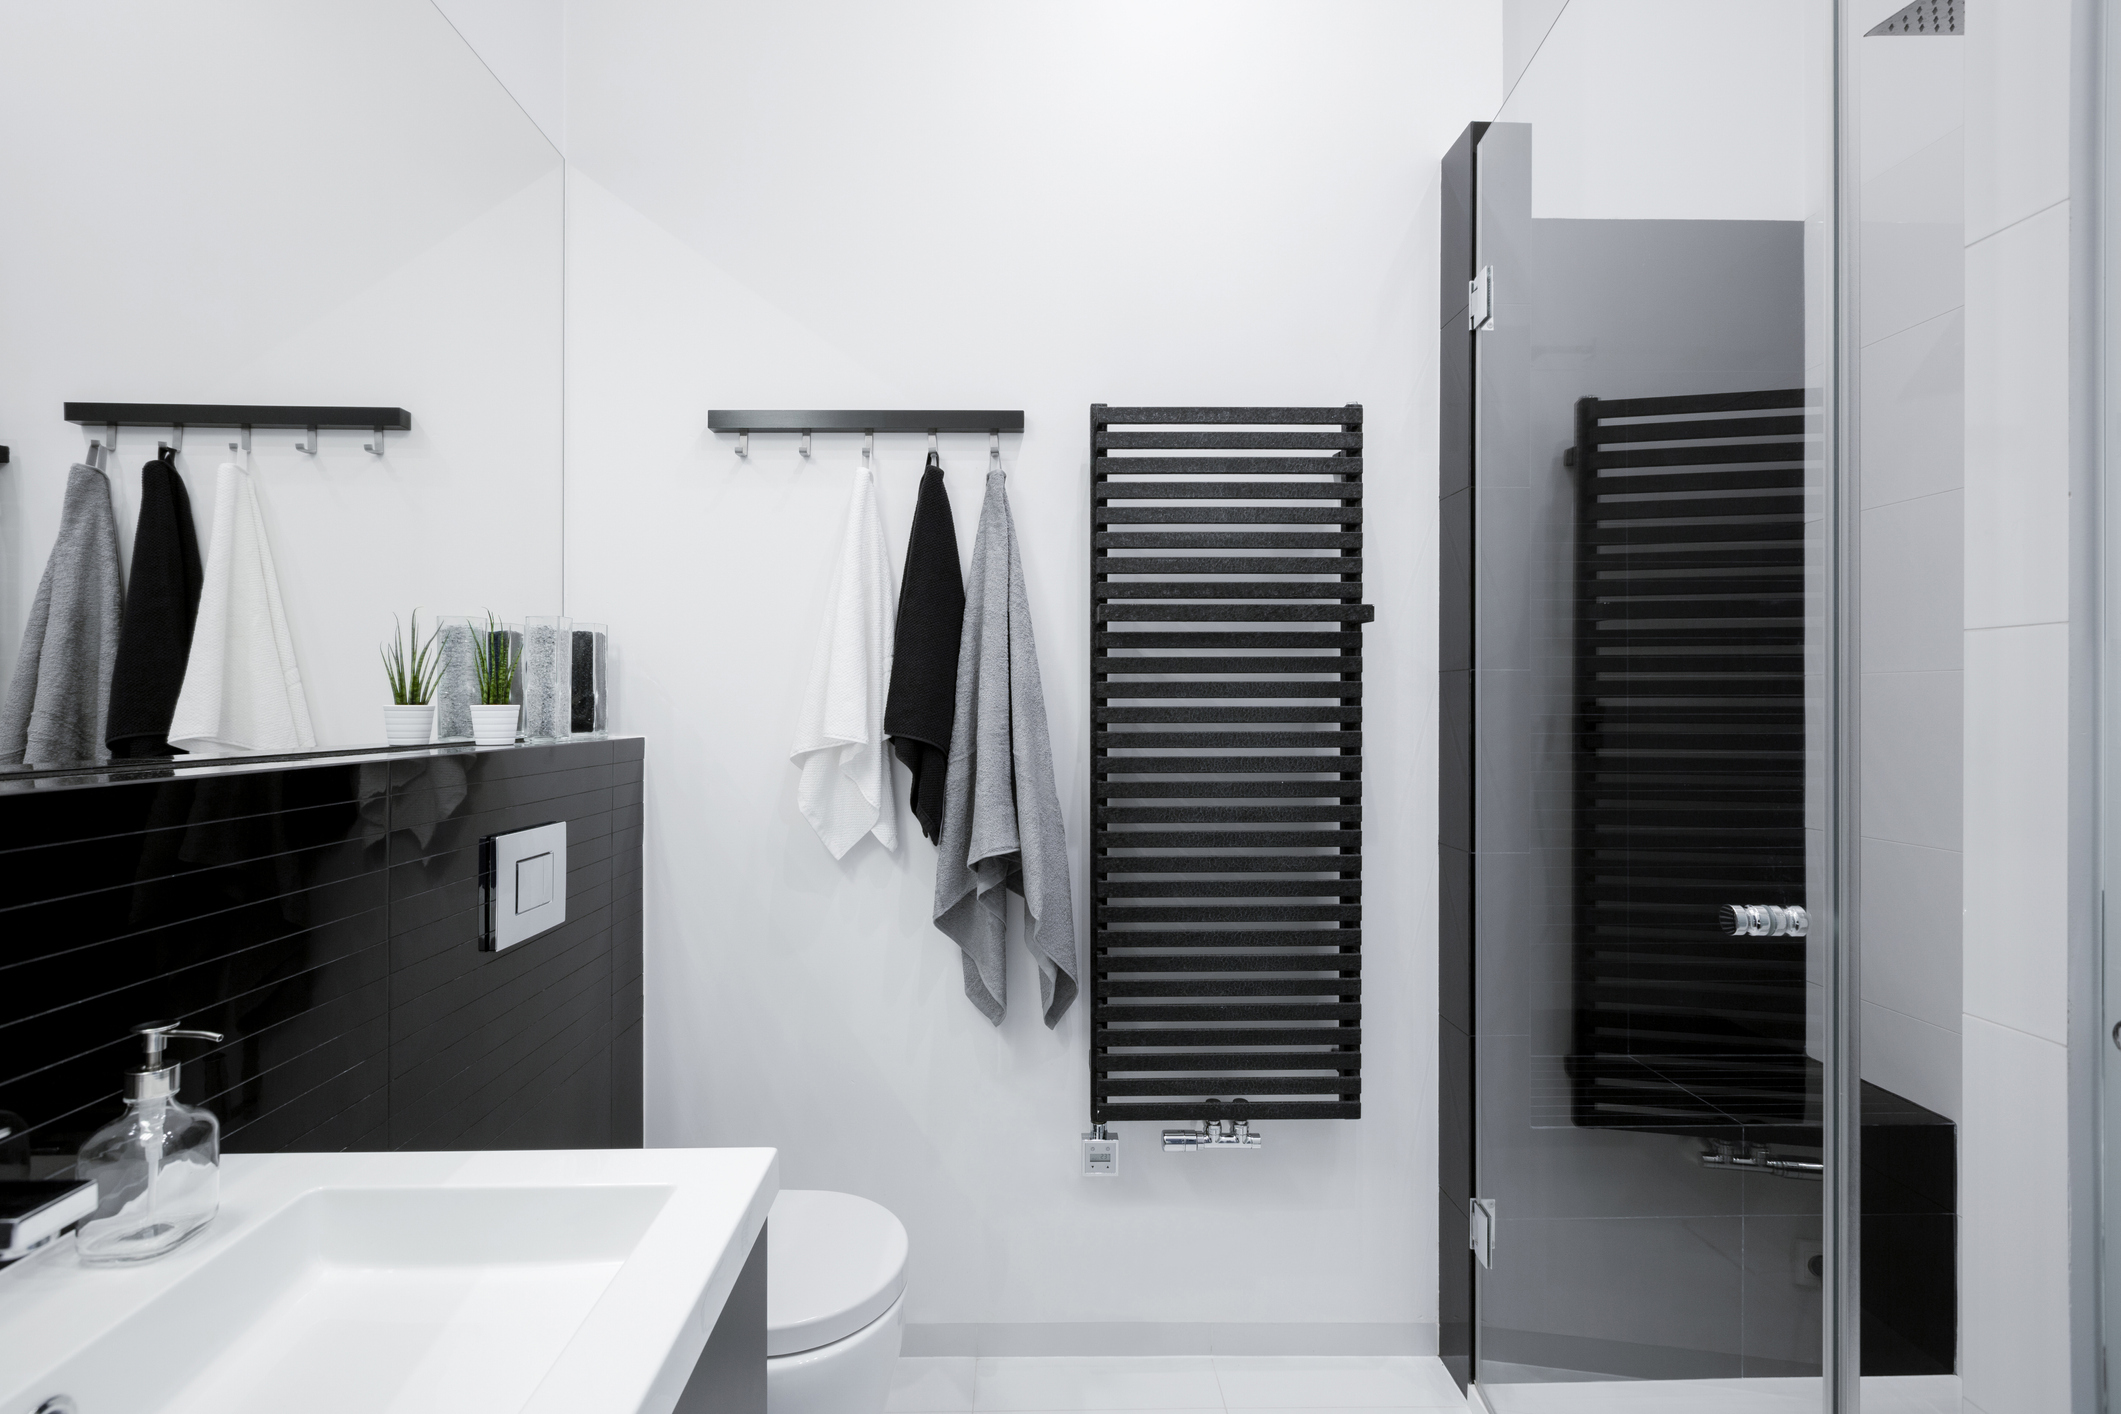 Salle de bain : quel est le sèche-serviettes le plus économique ?